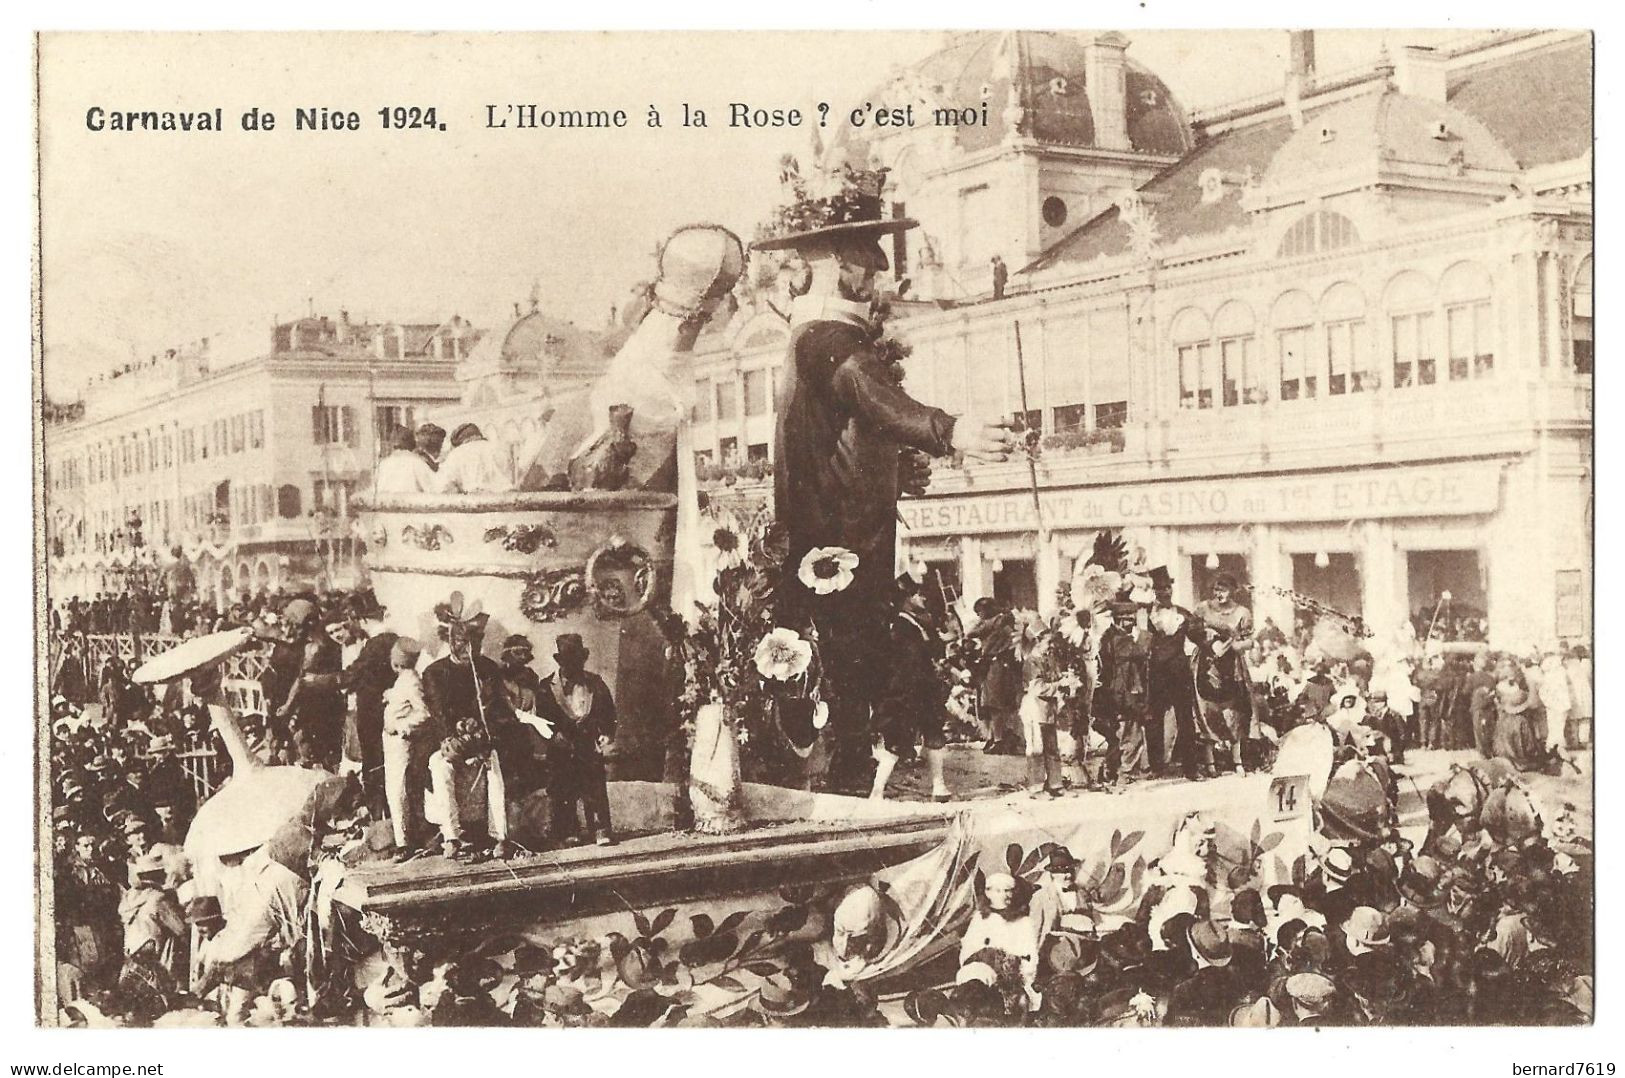 06  Nice - Carnaval De Nice 1924 - L'homme A La Rose ,  C'est Moi - Carnival